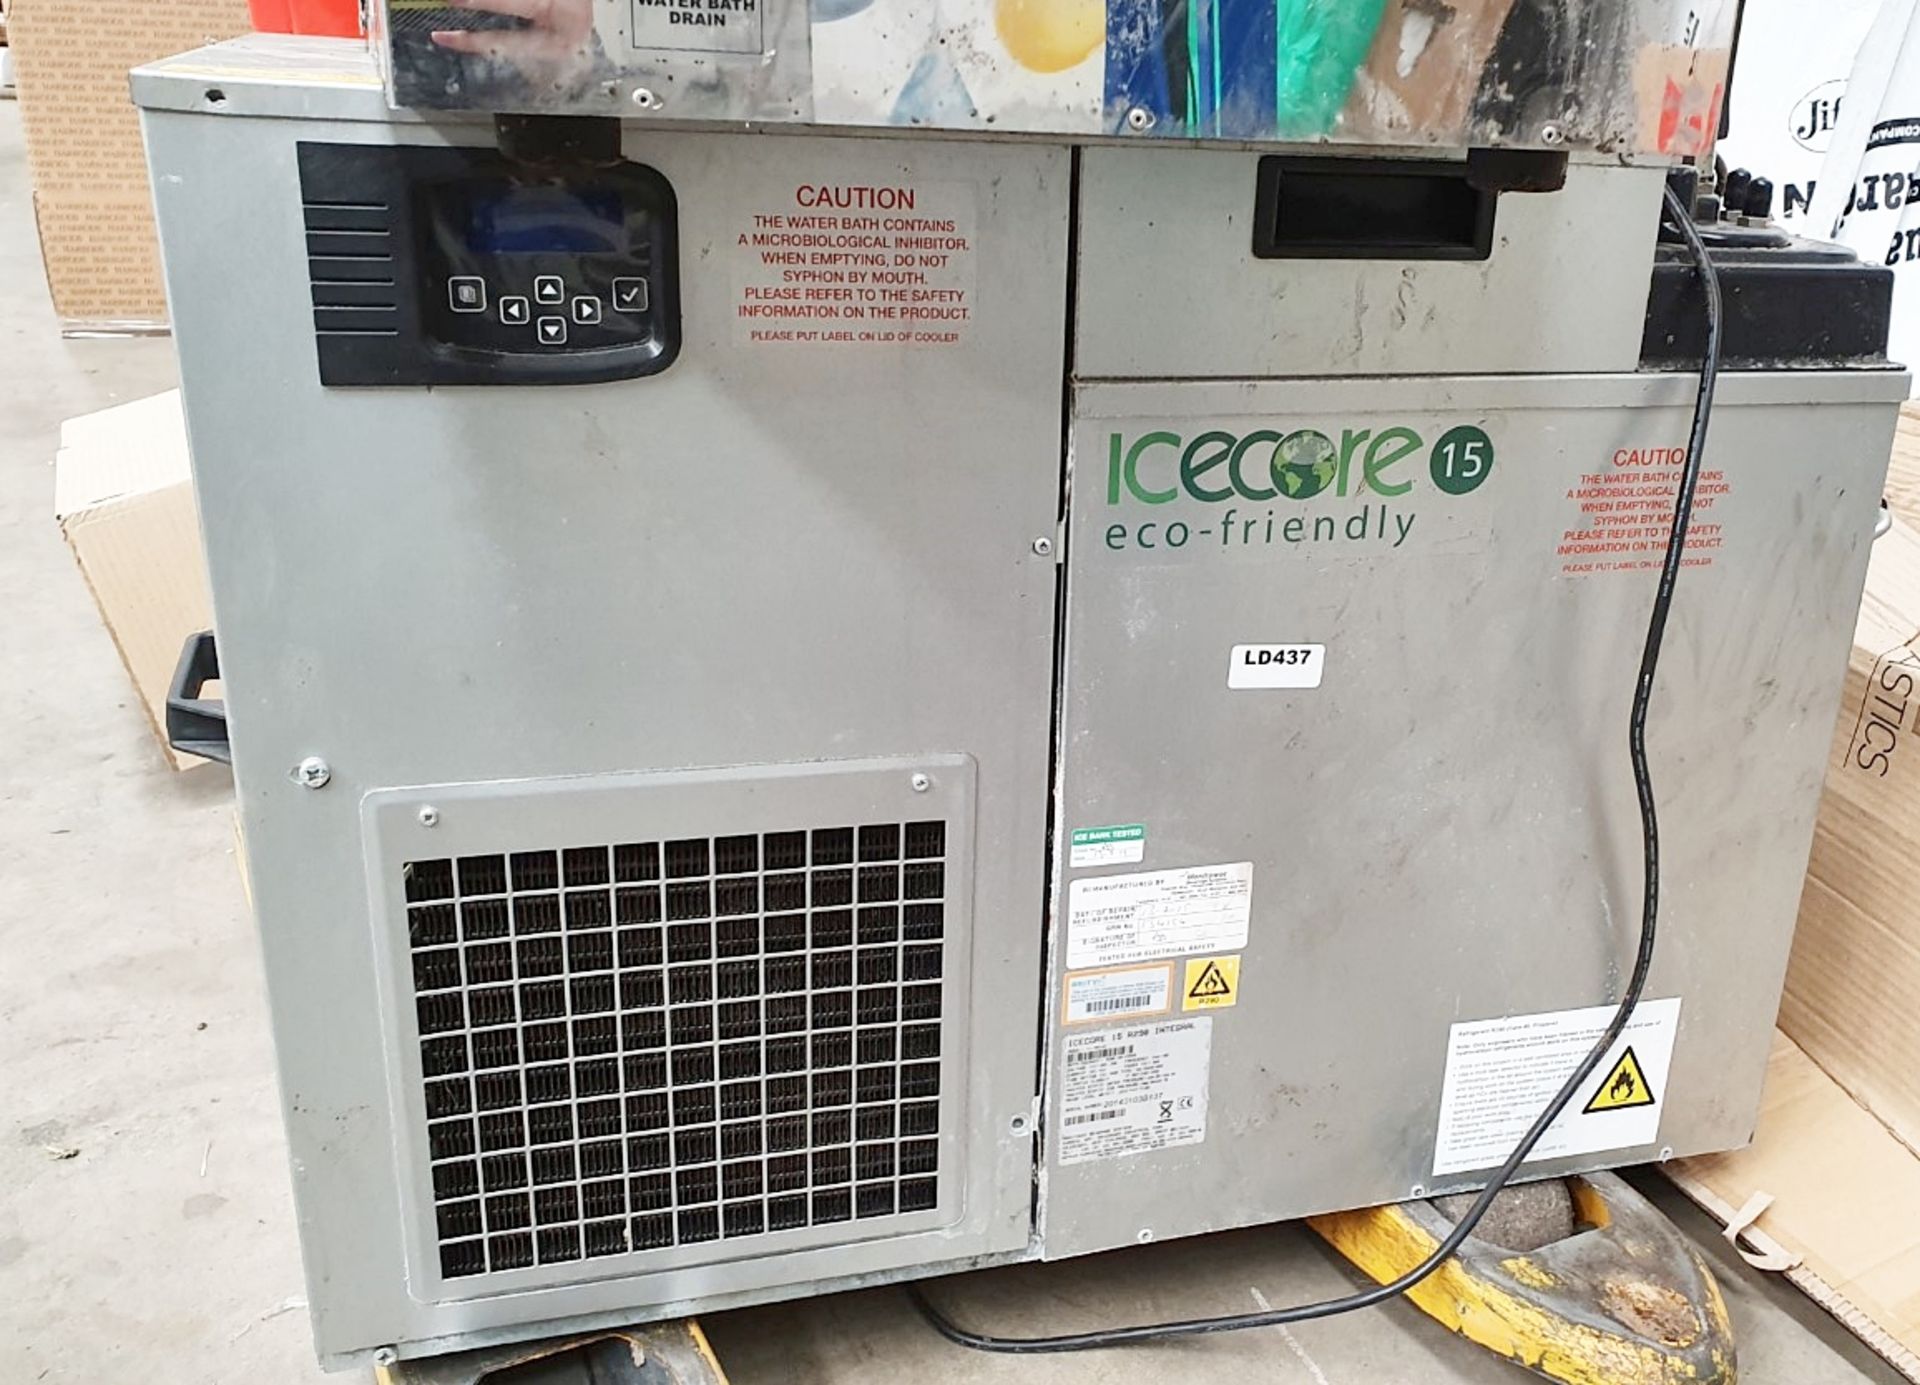 1 x Icecore Eco Friendly 15 Remote Cooler - Ref: LD347 - CL417 - Altrincham WA14 - Image 6 of 16